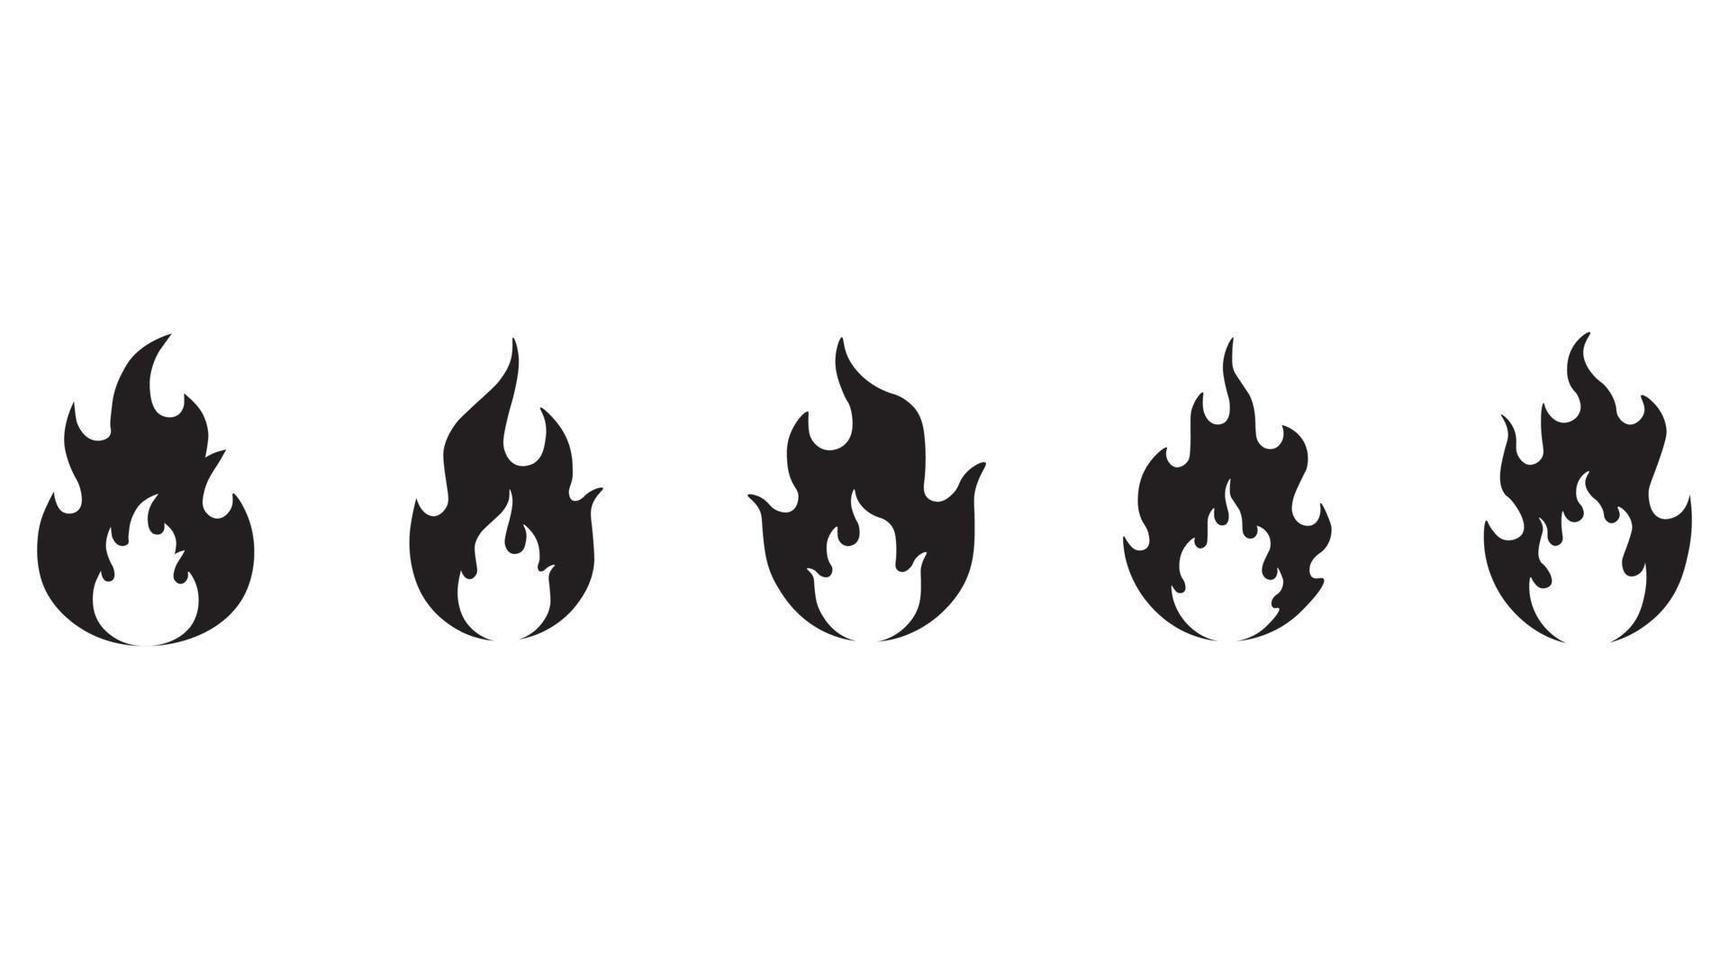 symbole de flammes de feu noir. définir des icônes plates feu isolé sur fond blanc. vecteur de jeu d'icônes de feu. ensemble d'icône de flamme définie.